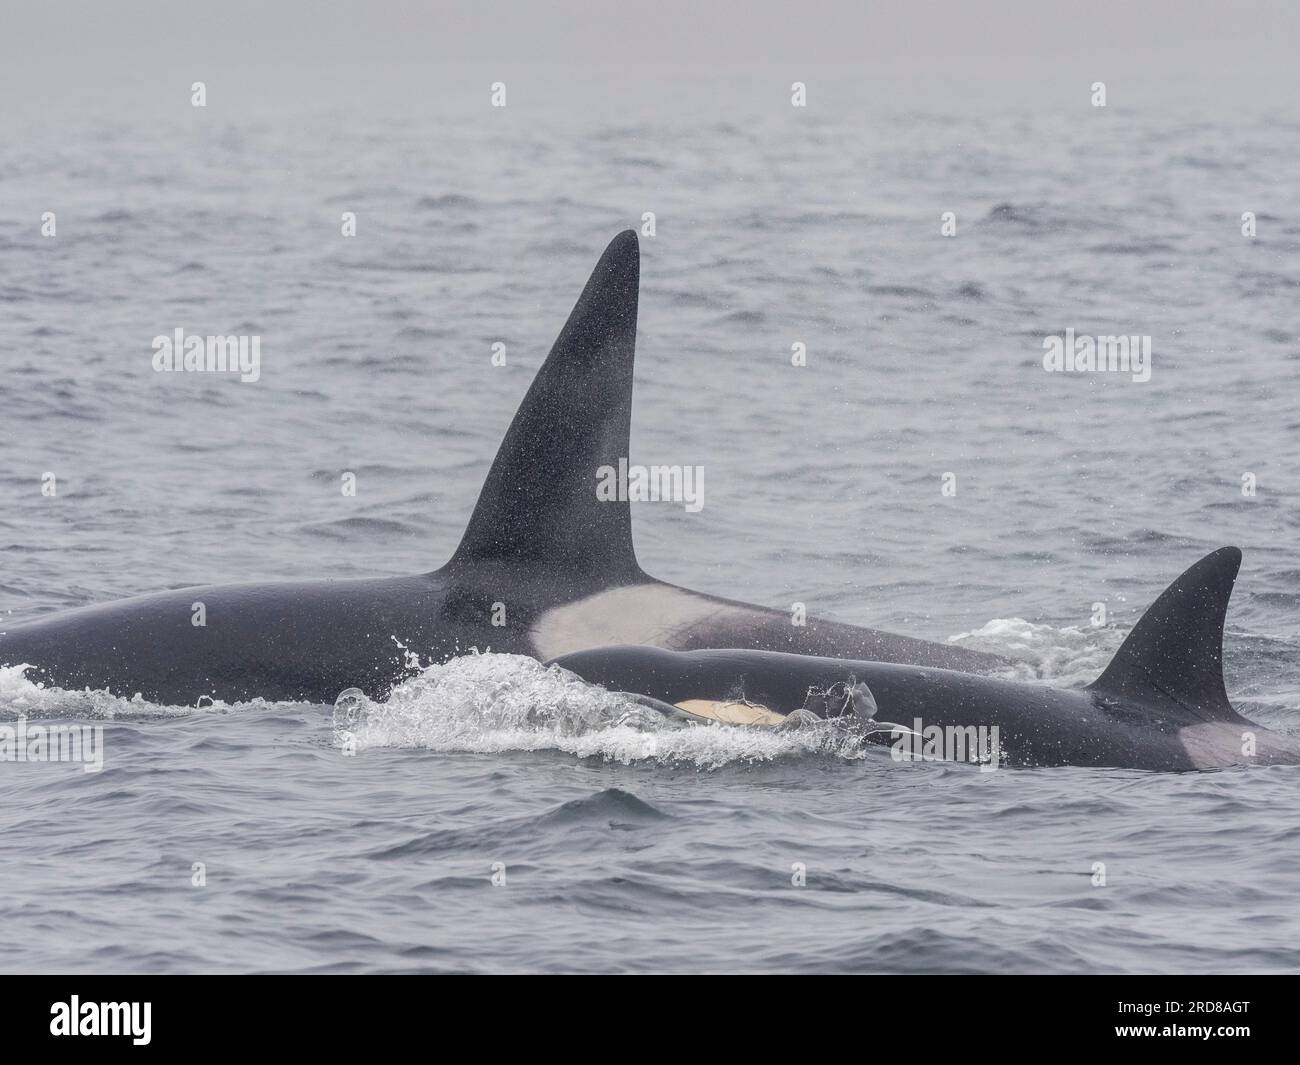 Im Monterey Bay Marine Sanctuary, Kalifornien, USA, gibt es eine Gruppe von transienten Killerwalen (Orcinus orca), die einen Elefanten fangen und töten Stockfoto